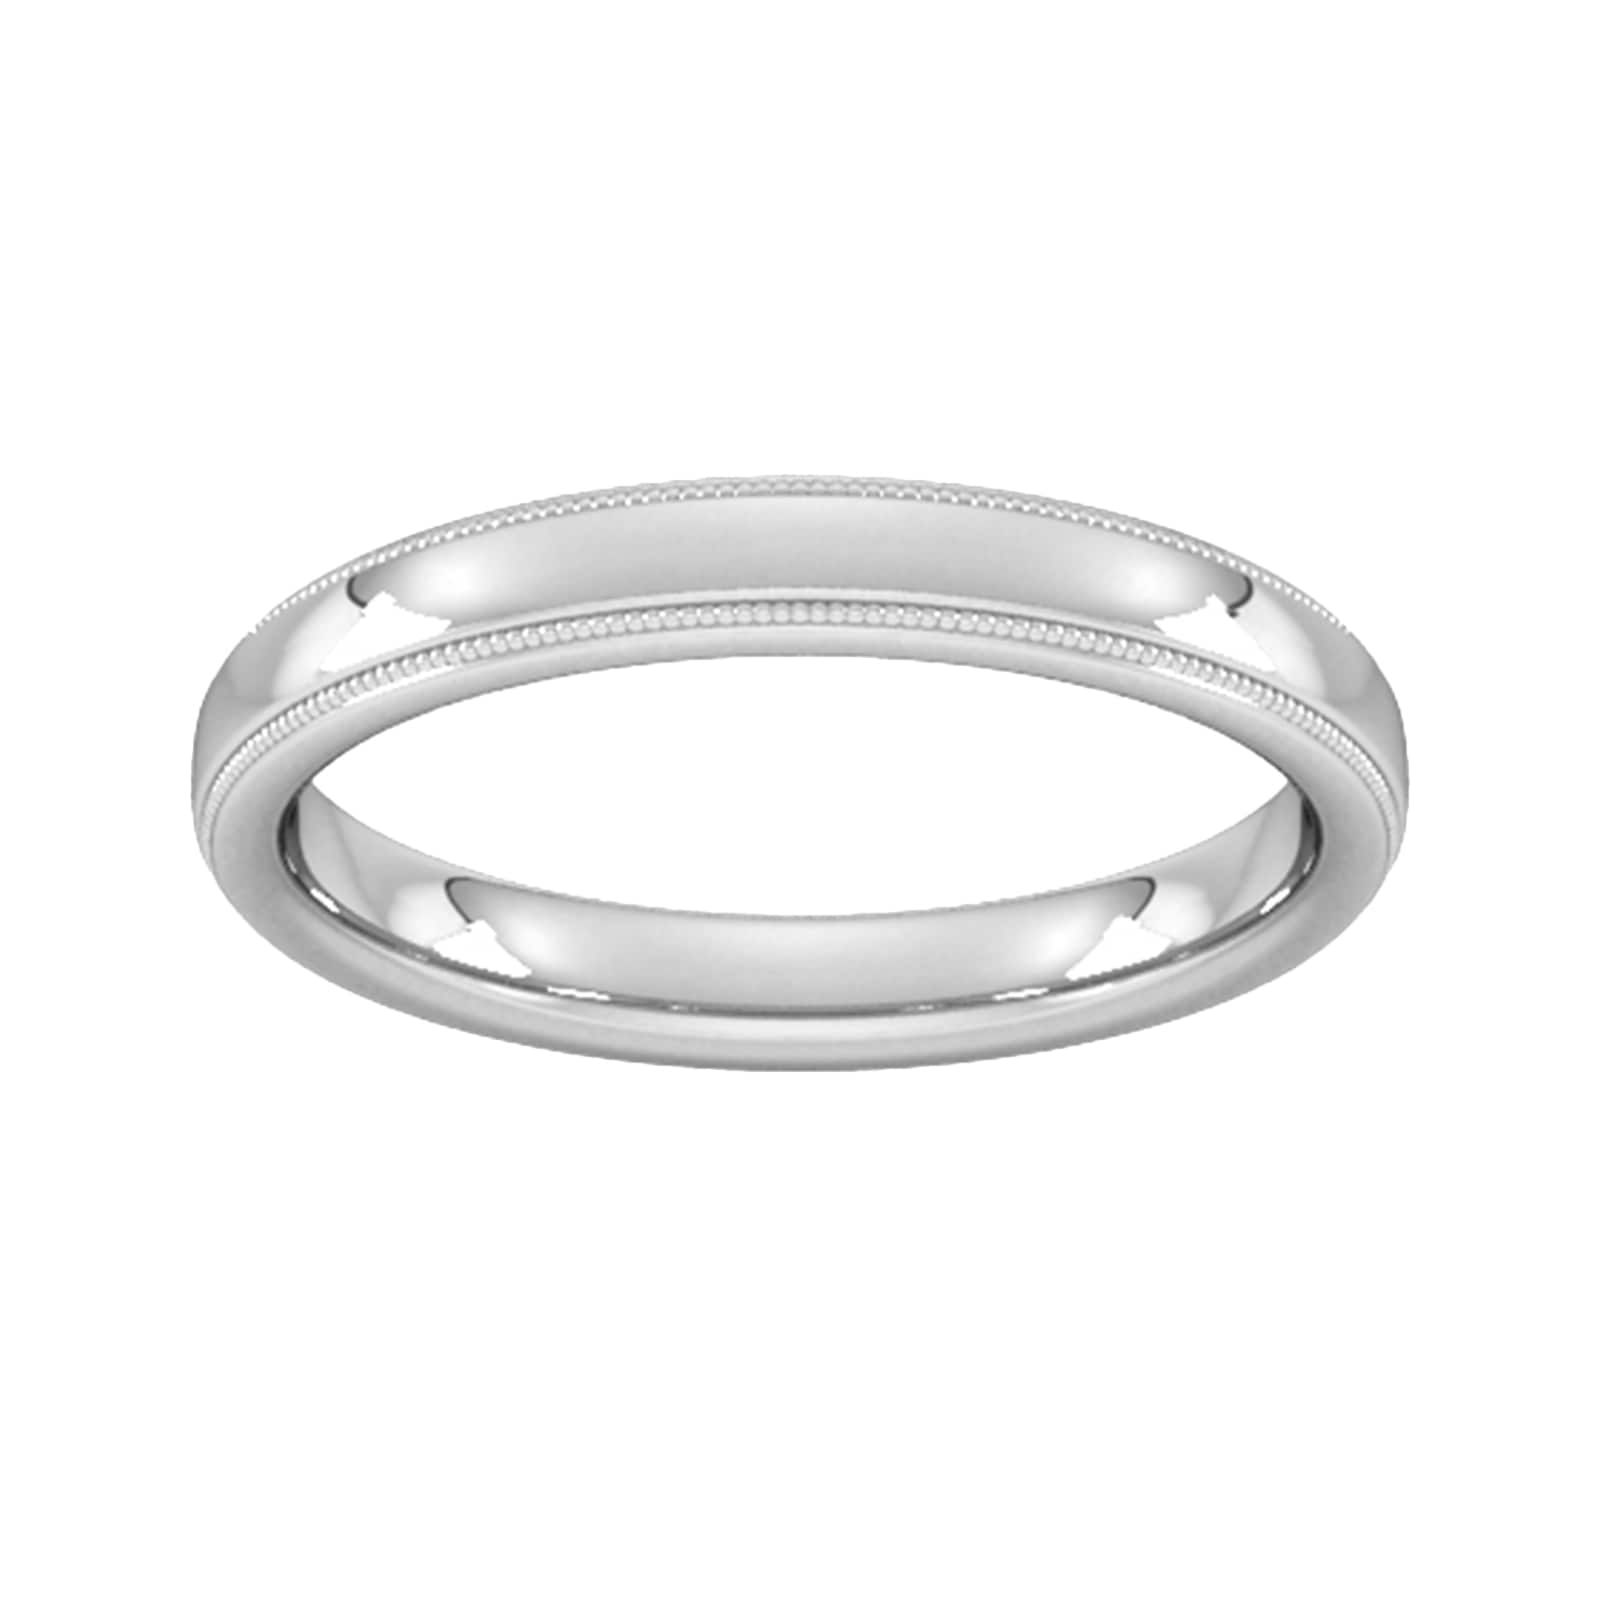 3mm Slight Court Heavy Milgrain Edge Wedding Ring In 9 Carat White Gold - Ring Size M